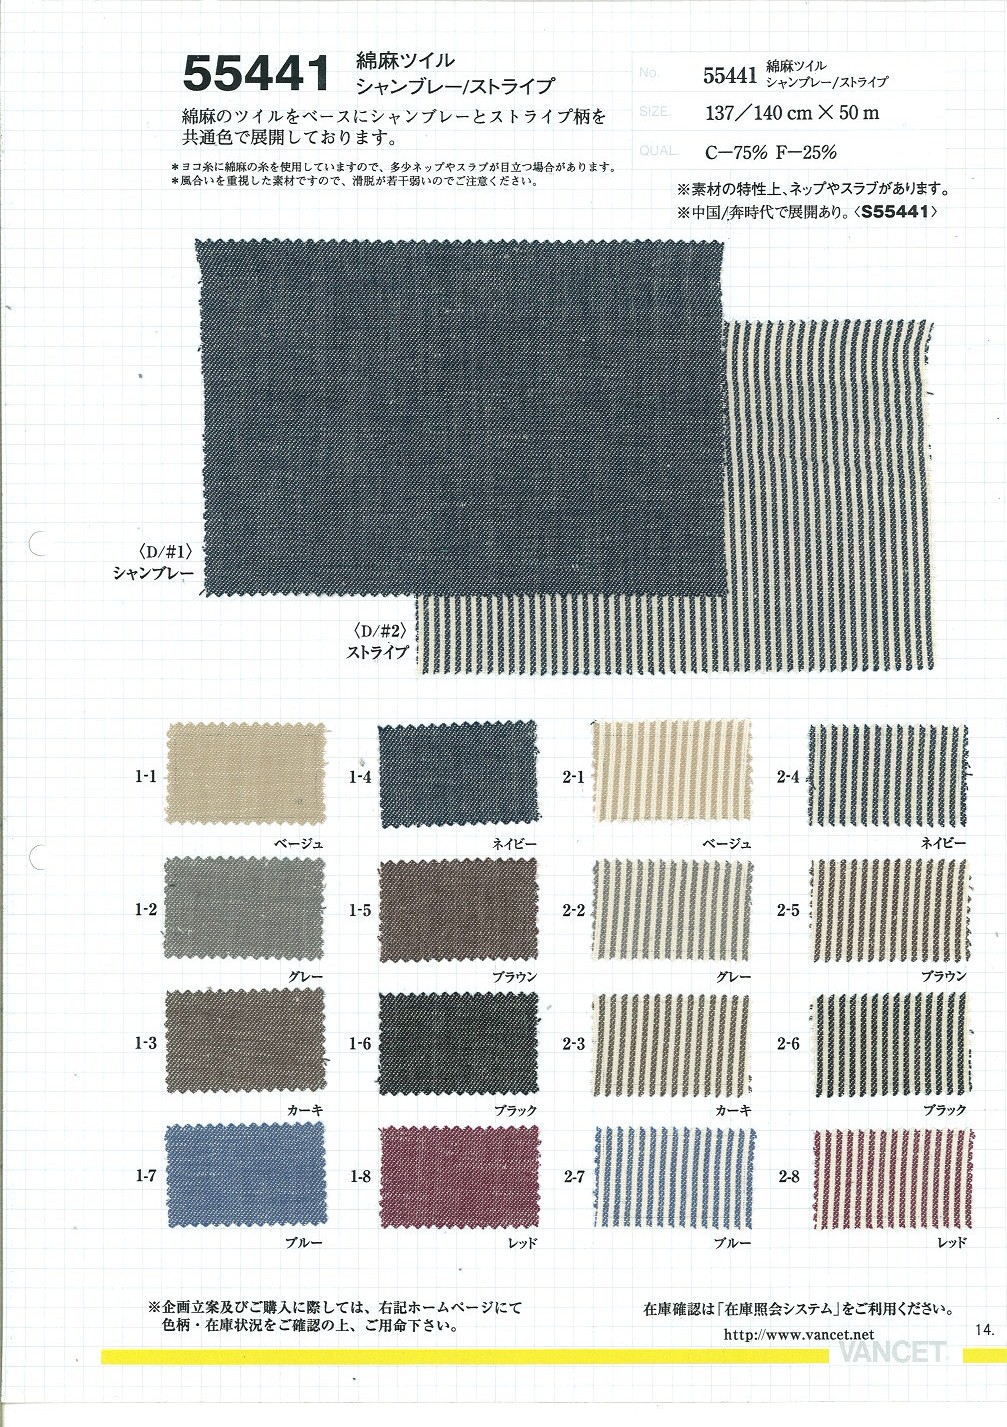 55441 Leinen Leinen Twill Chambray/Streifen[Textilgewebe] VANCET